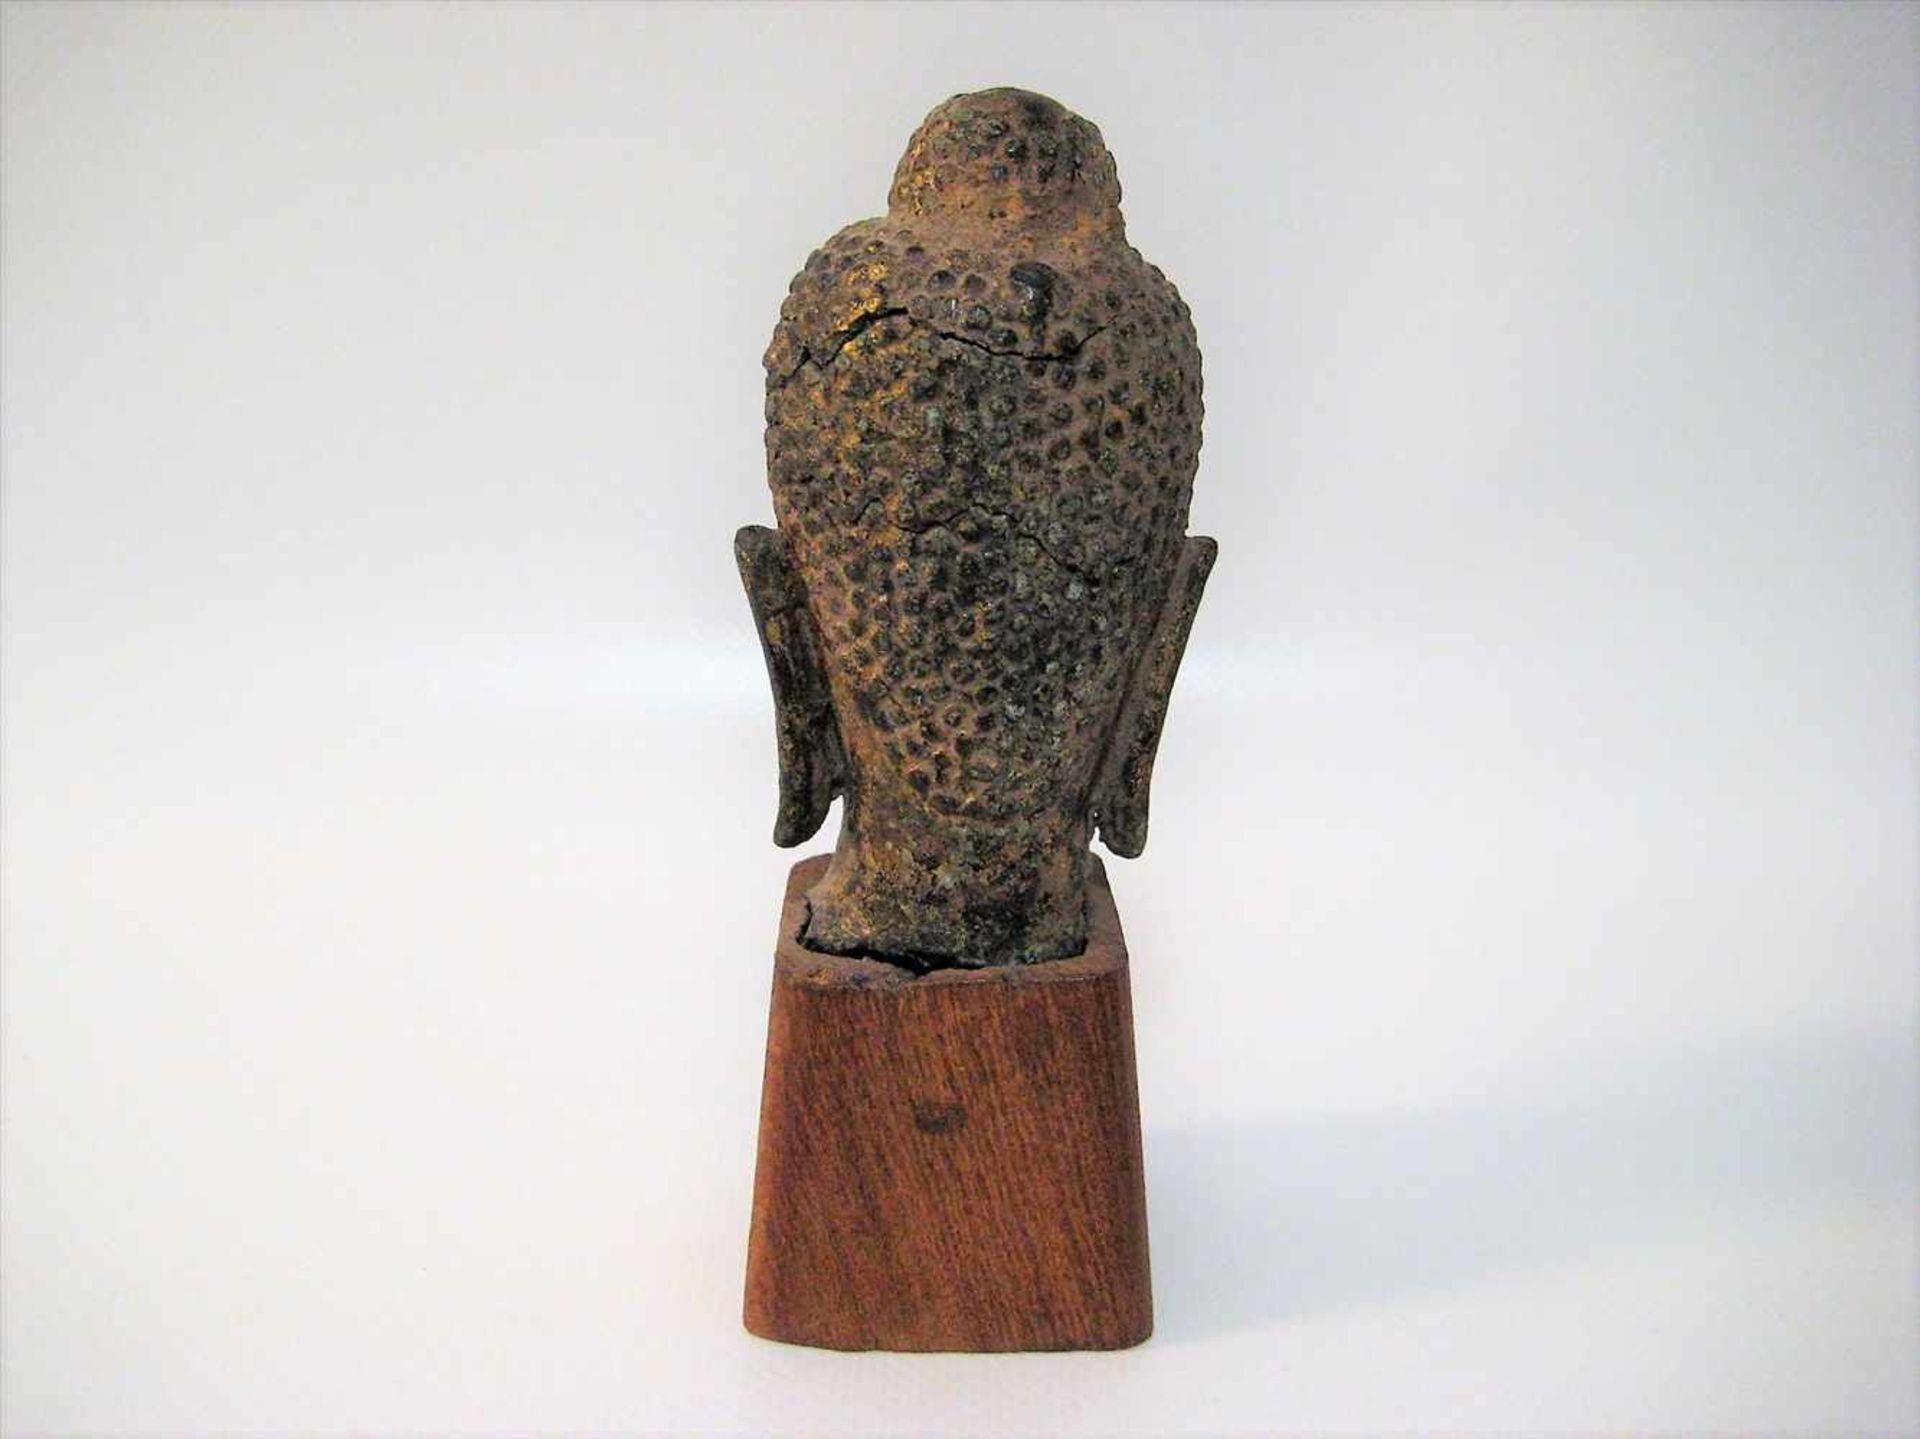 Kopf eines Buddhas, Thailand, Bronze, Kopf besch., Holzsockel, 9 x 5 x 5,5 cm. - Bild 2 aus 2